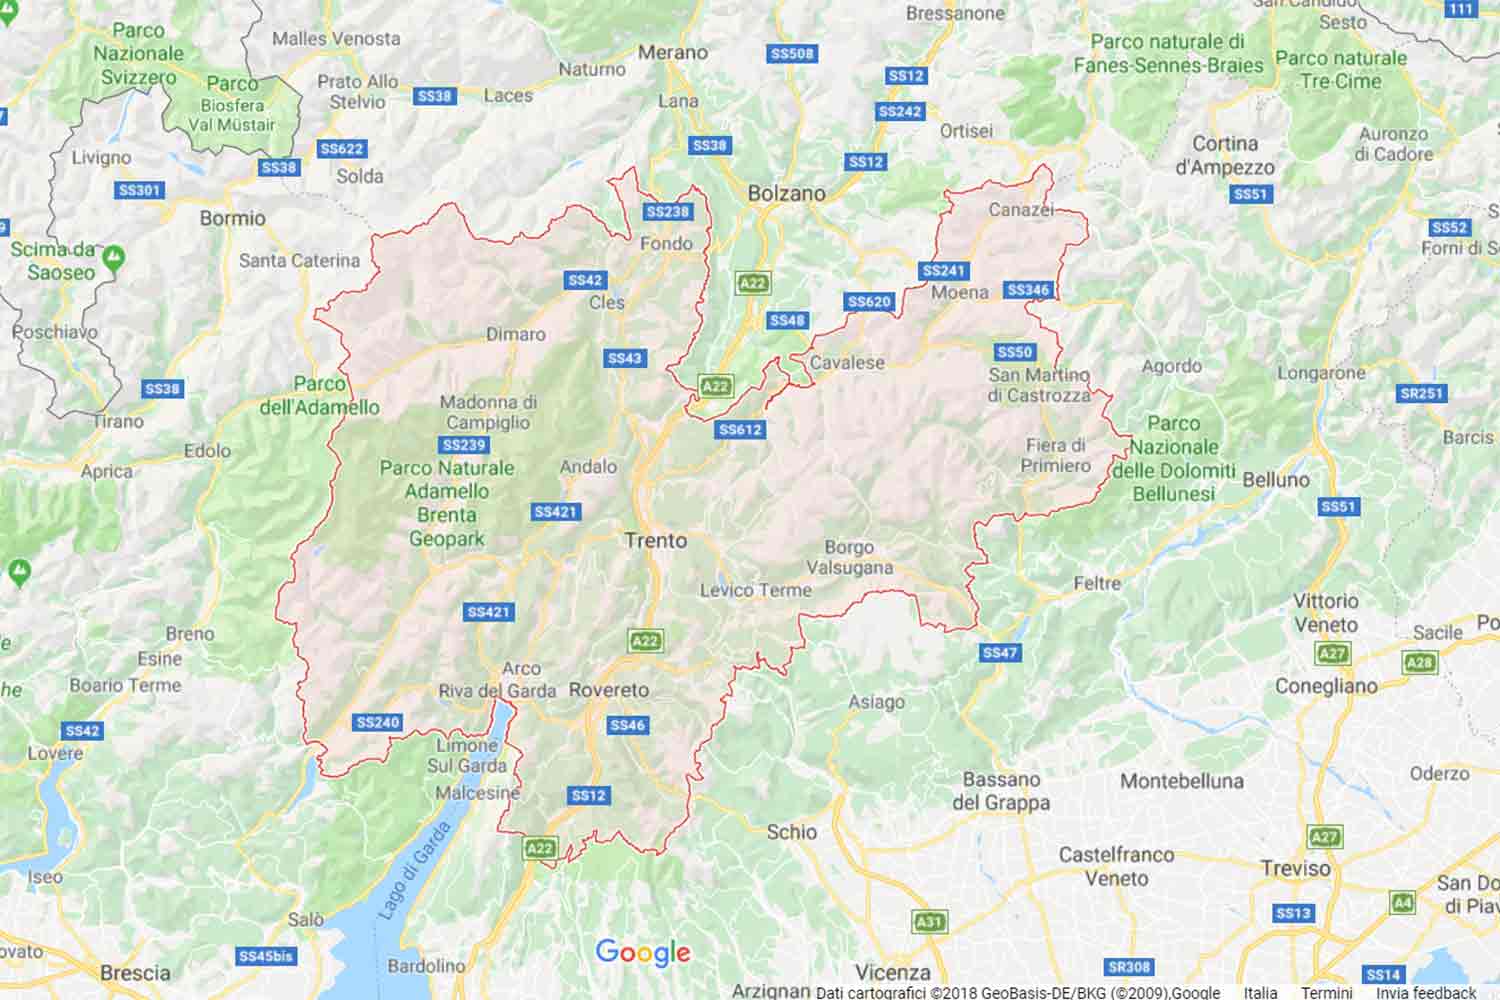 Trentino - Trento - Arco Preventivi Veloci google maps